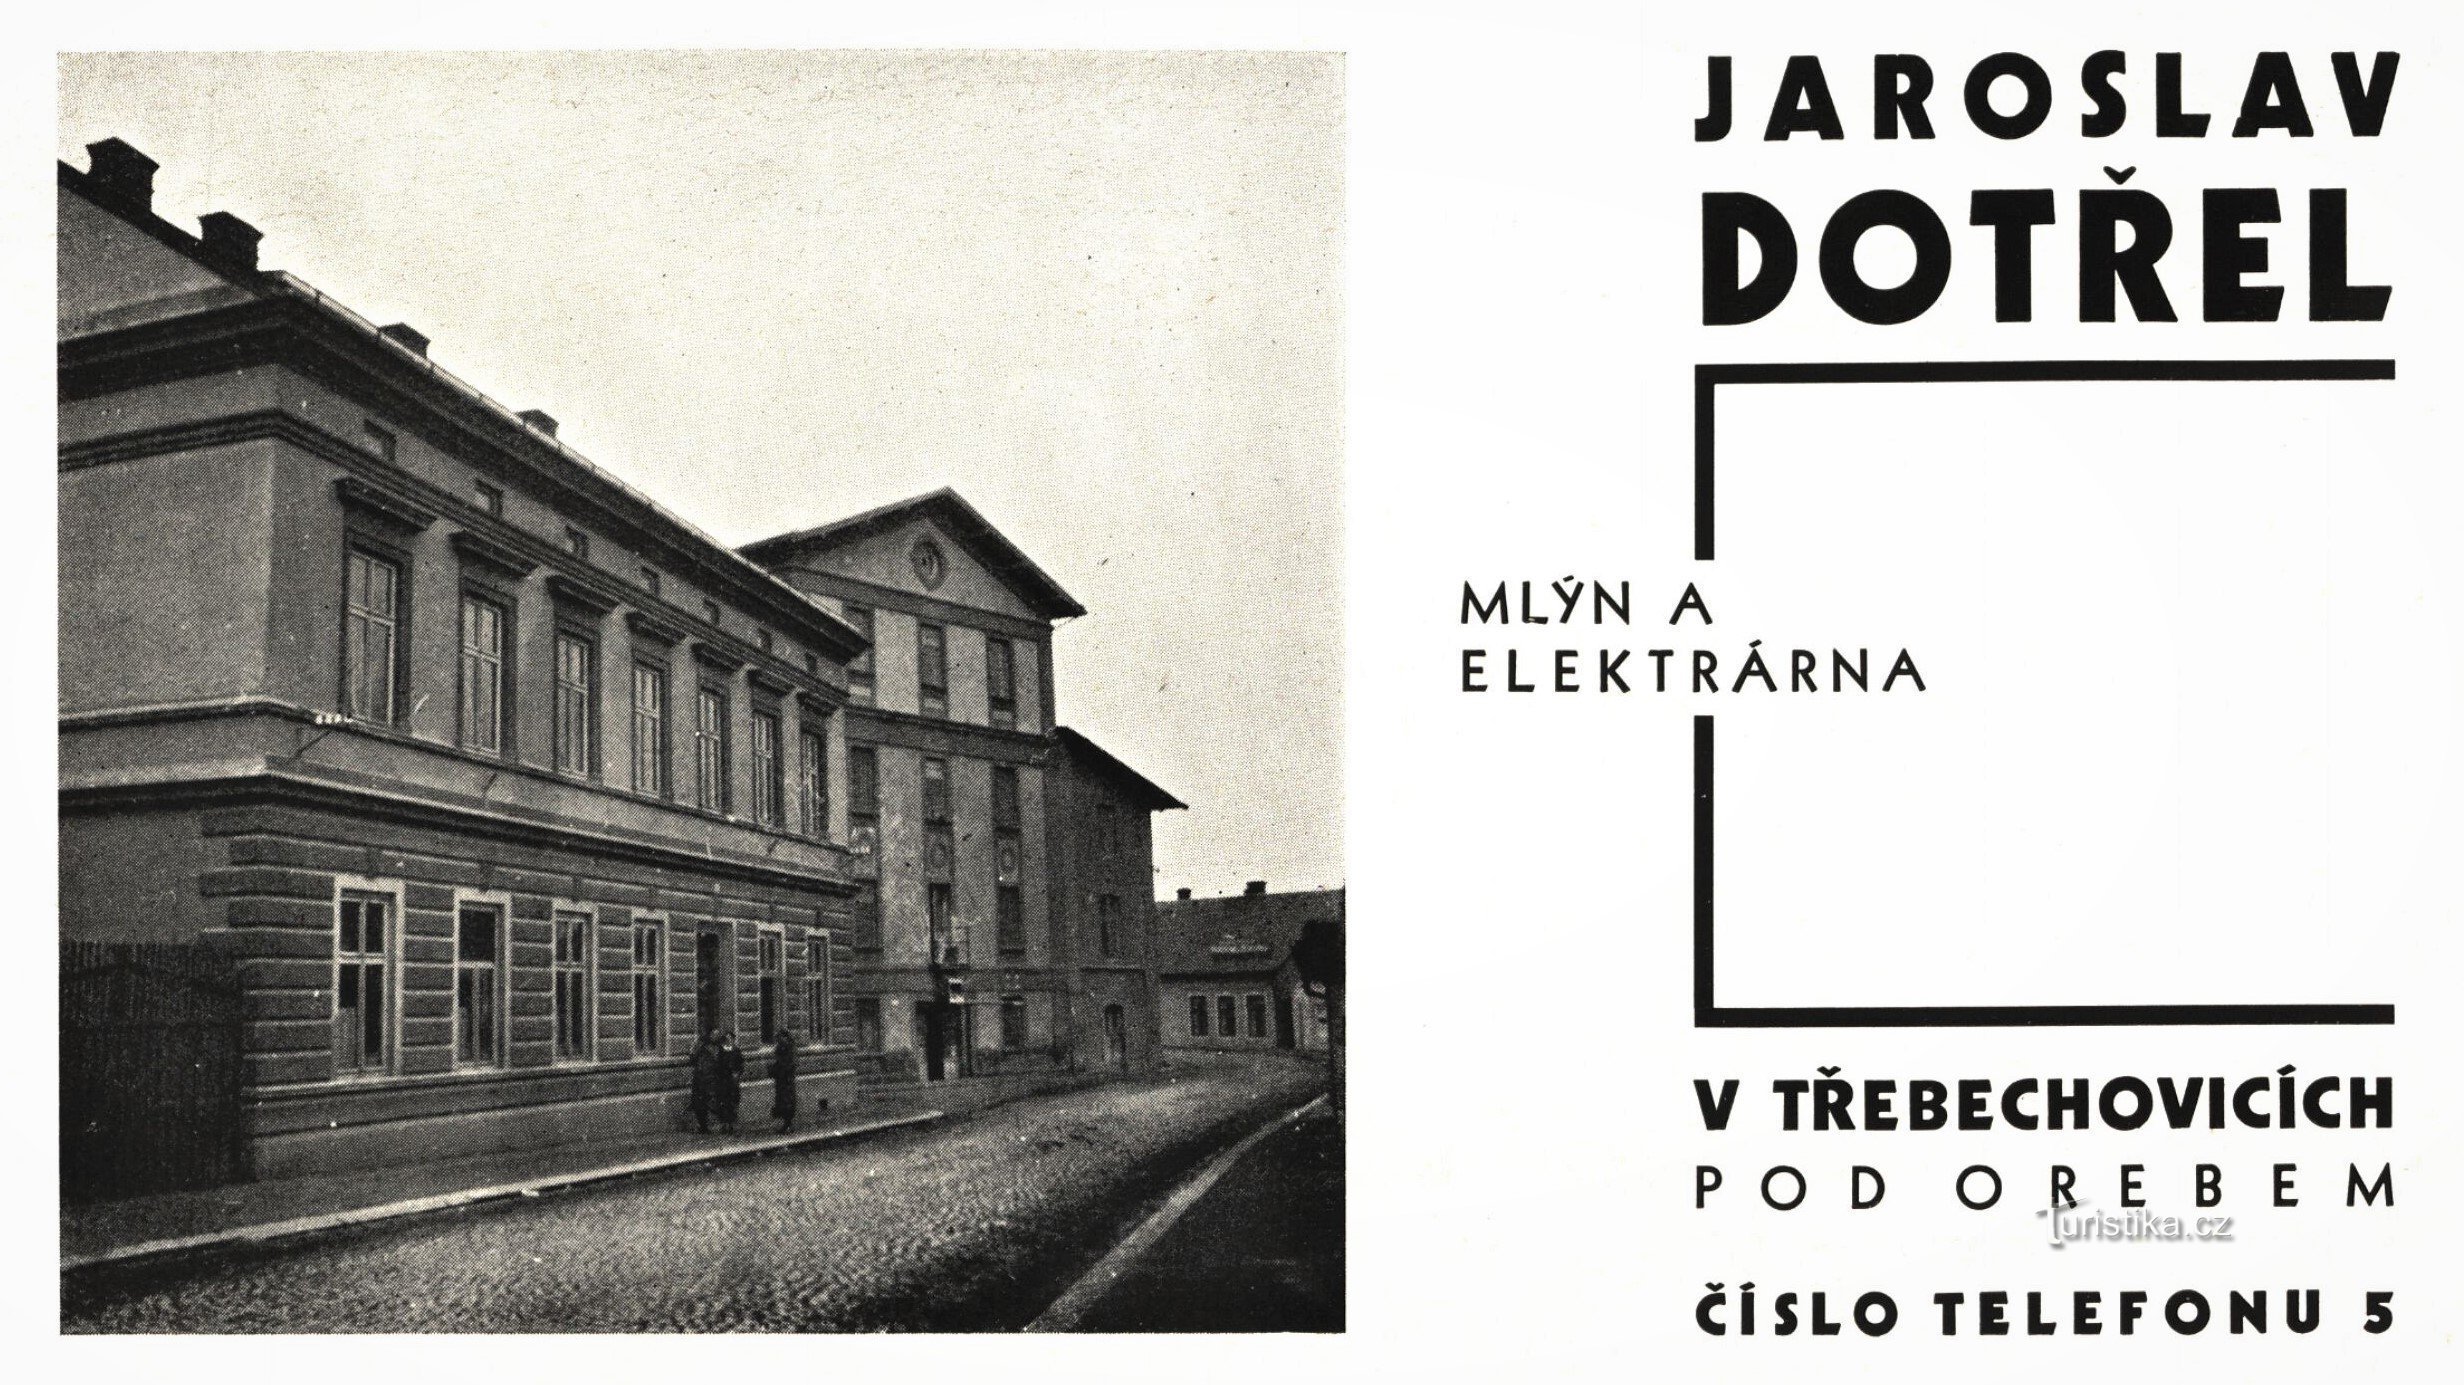 Διαφήμιση εποχής του μυλωνά Jaroslav Dotřel (1934)